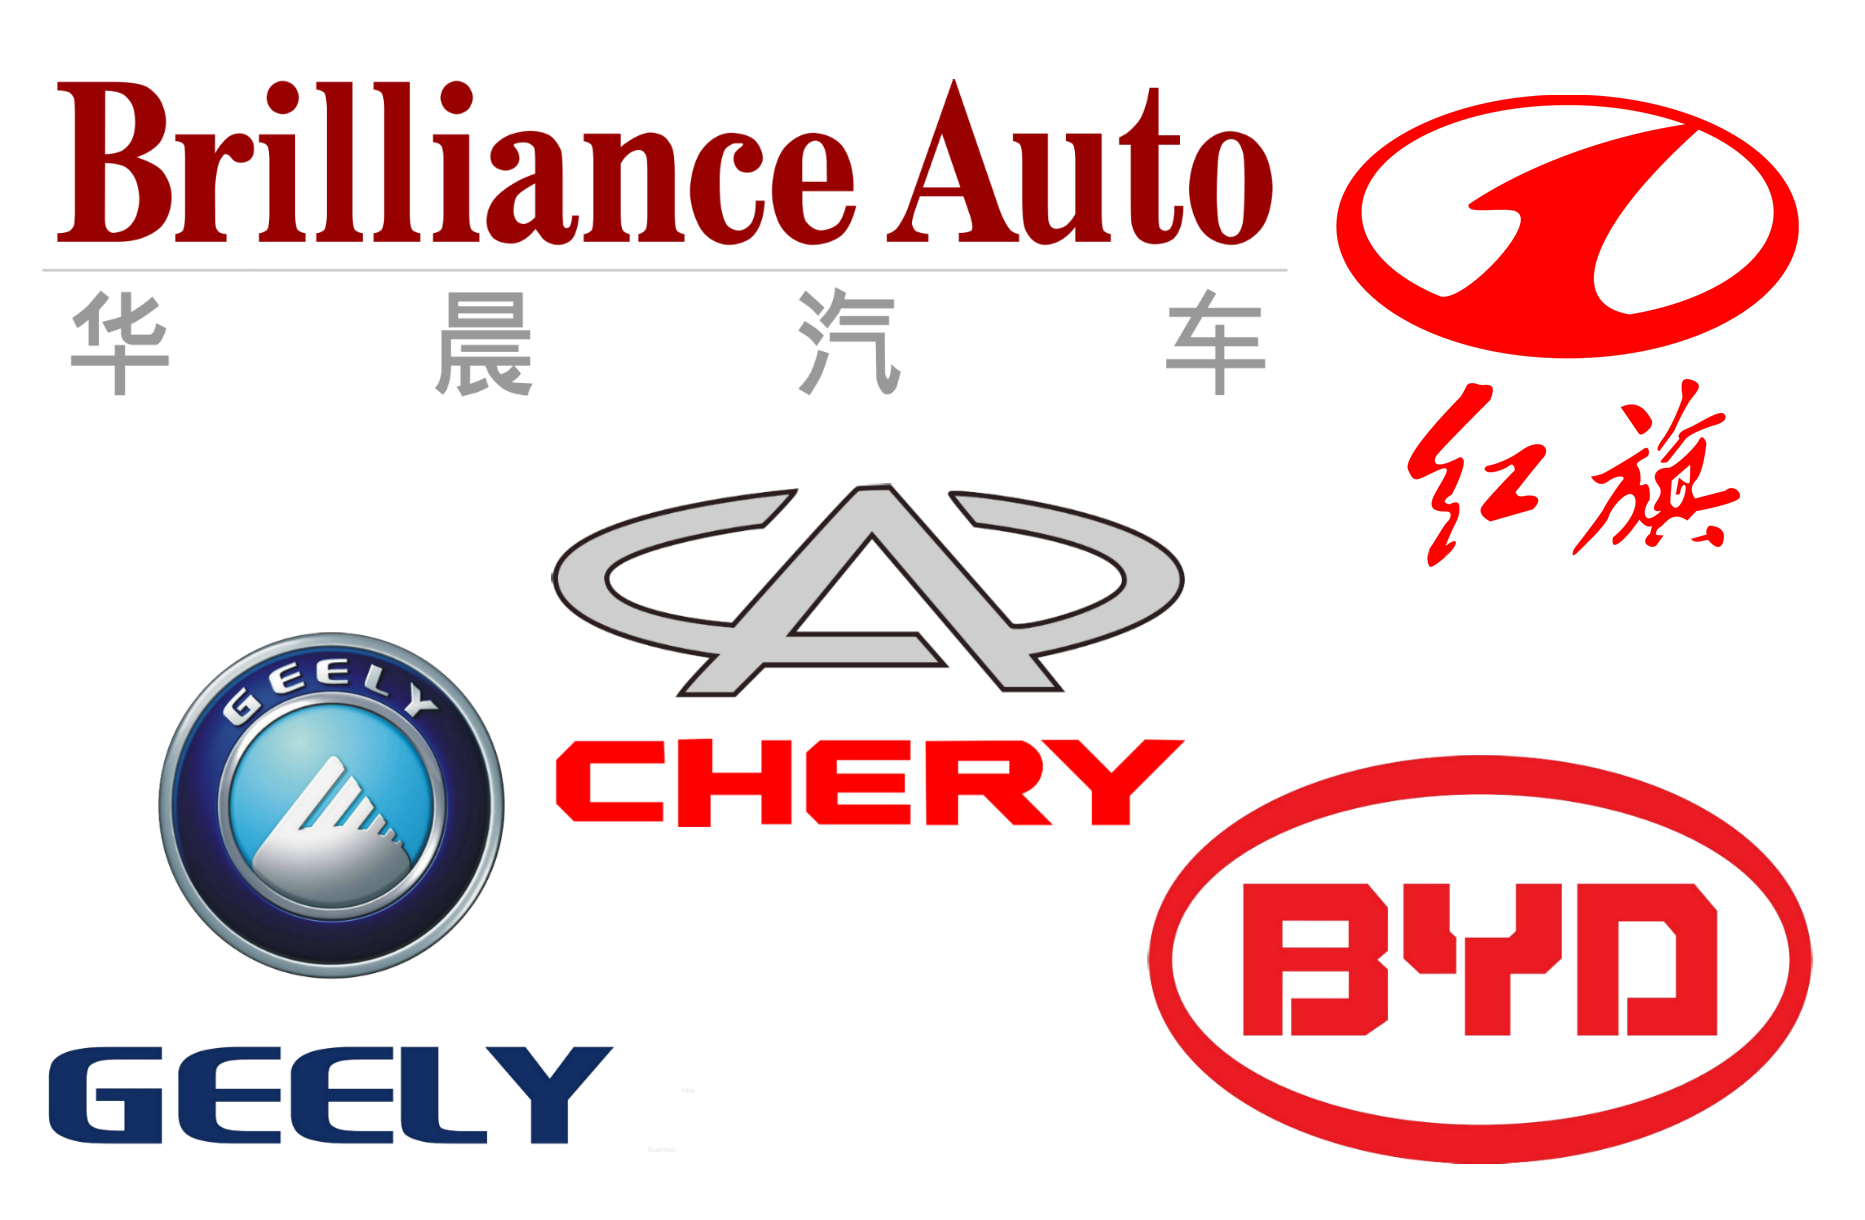 Значки китайских автомобилей. Значки китайских авто. Автомобильные эмблемы китайских марок. Марки китайских автомобилей со значками. Китайские автомобильные бренды.